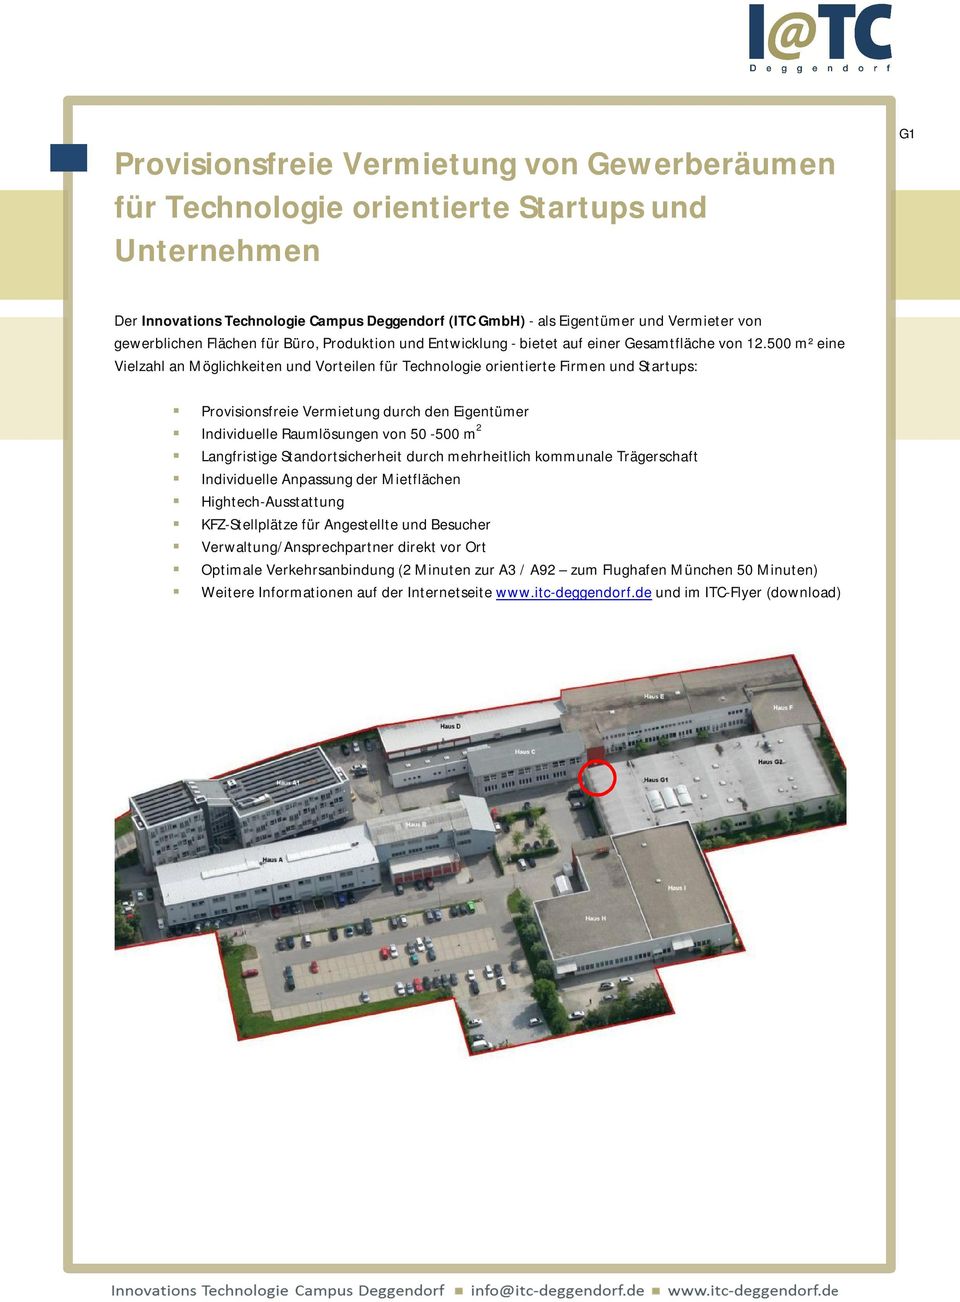 500 m² eine Vielzahl an Möglichkeiten und Vorteilen für Technologie orientierte Firmen und Startups: Provisionsfreie Vermietung durch den Eigentümer Individuelle Raumlösungen von 50-500 m 2